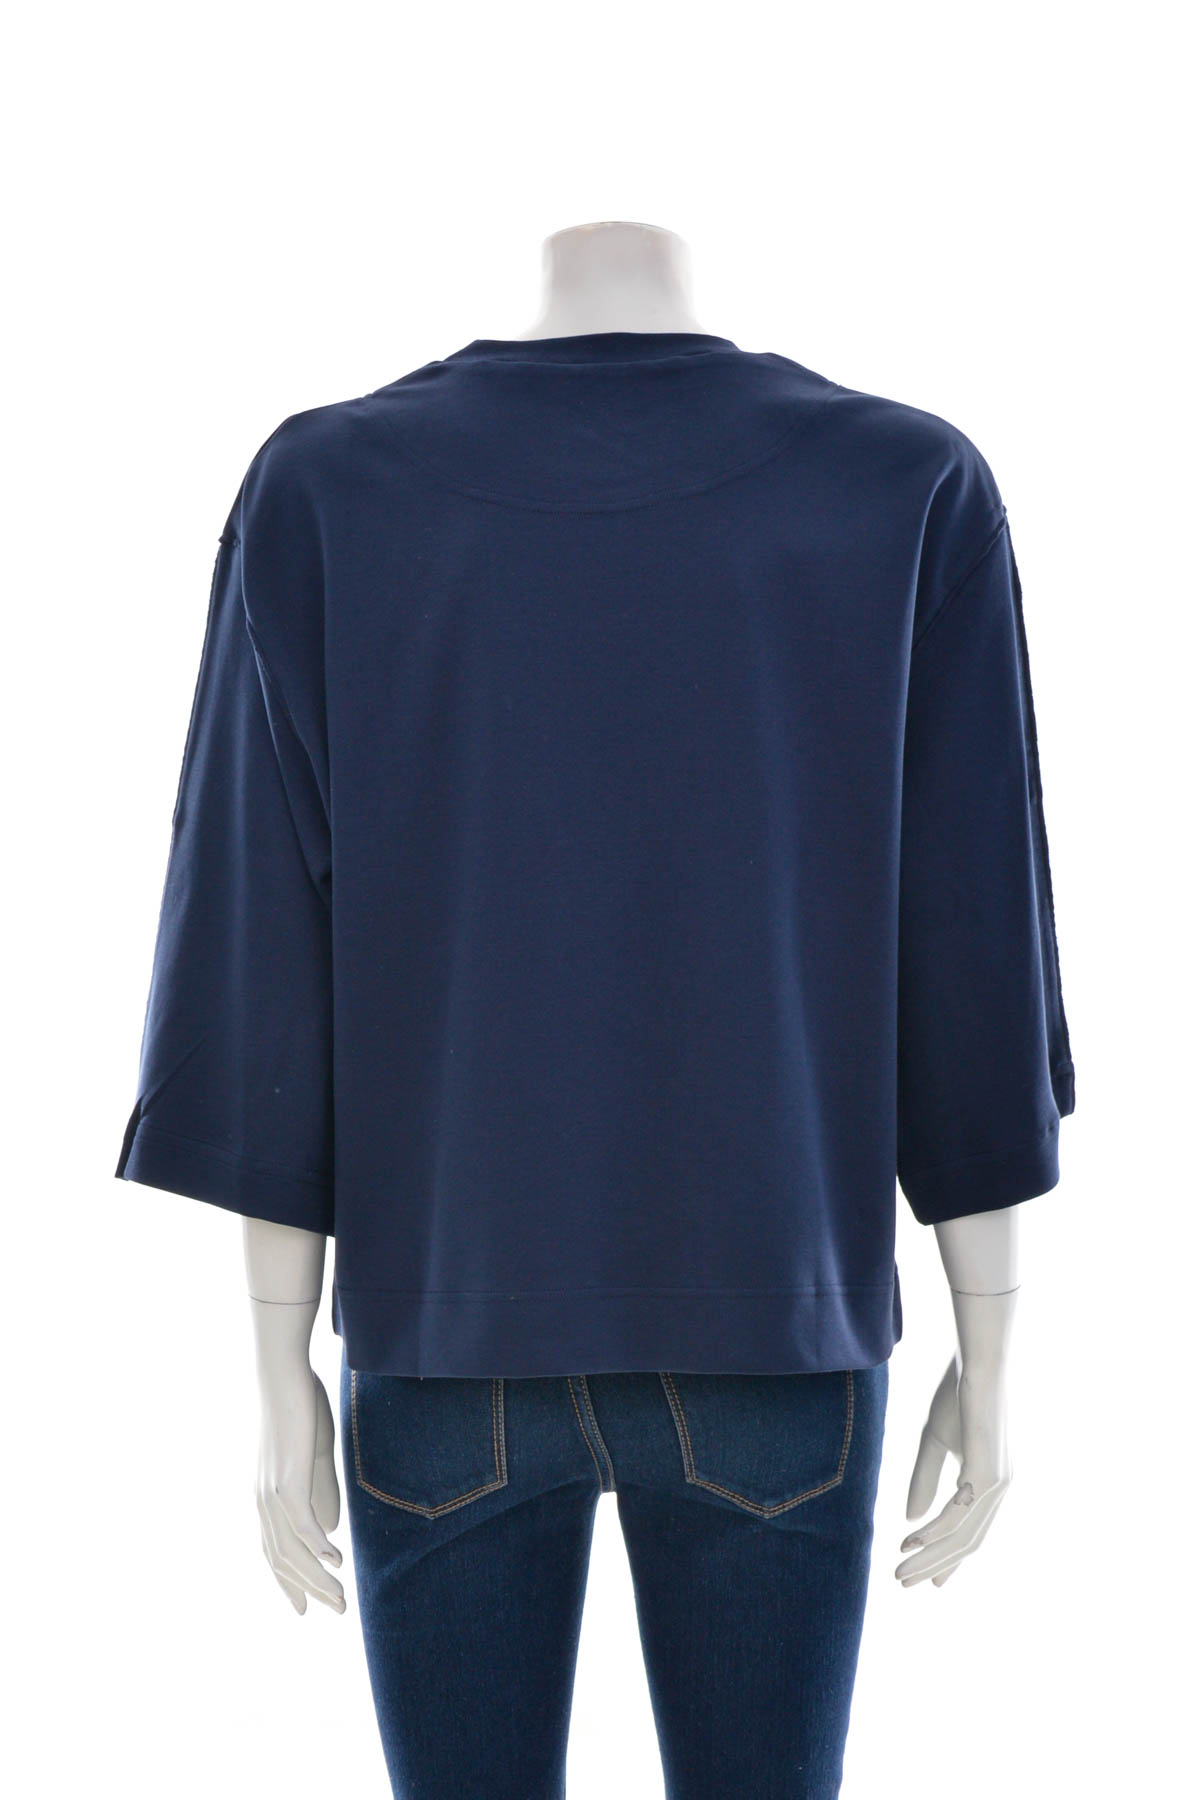 Women's blouse - Kind of blau - 1